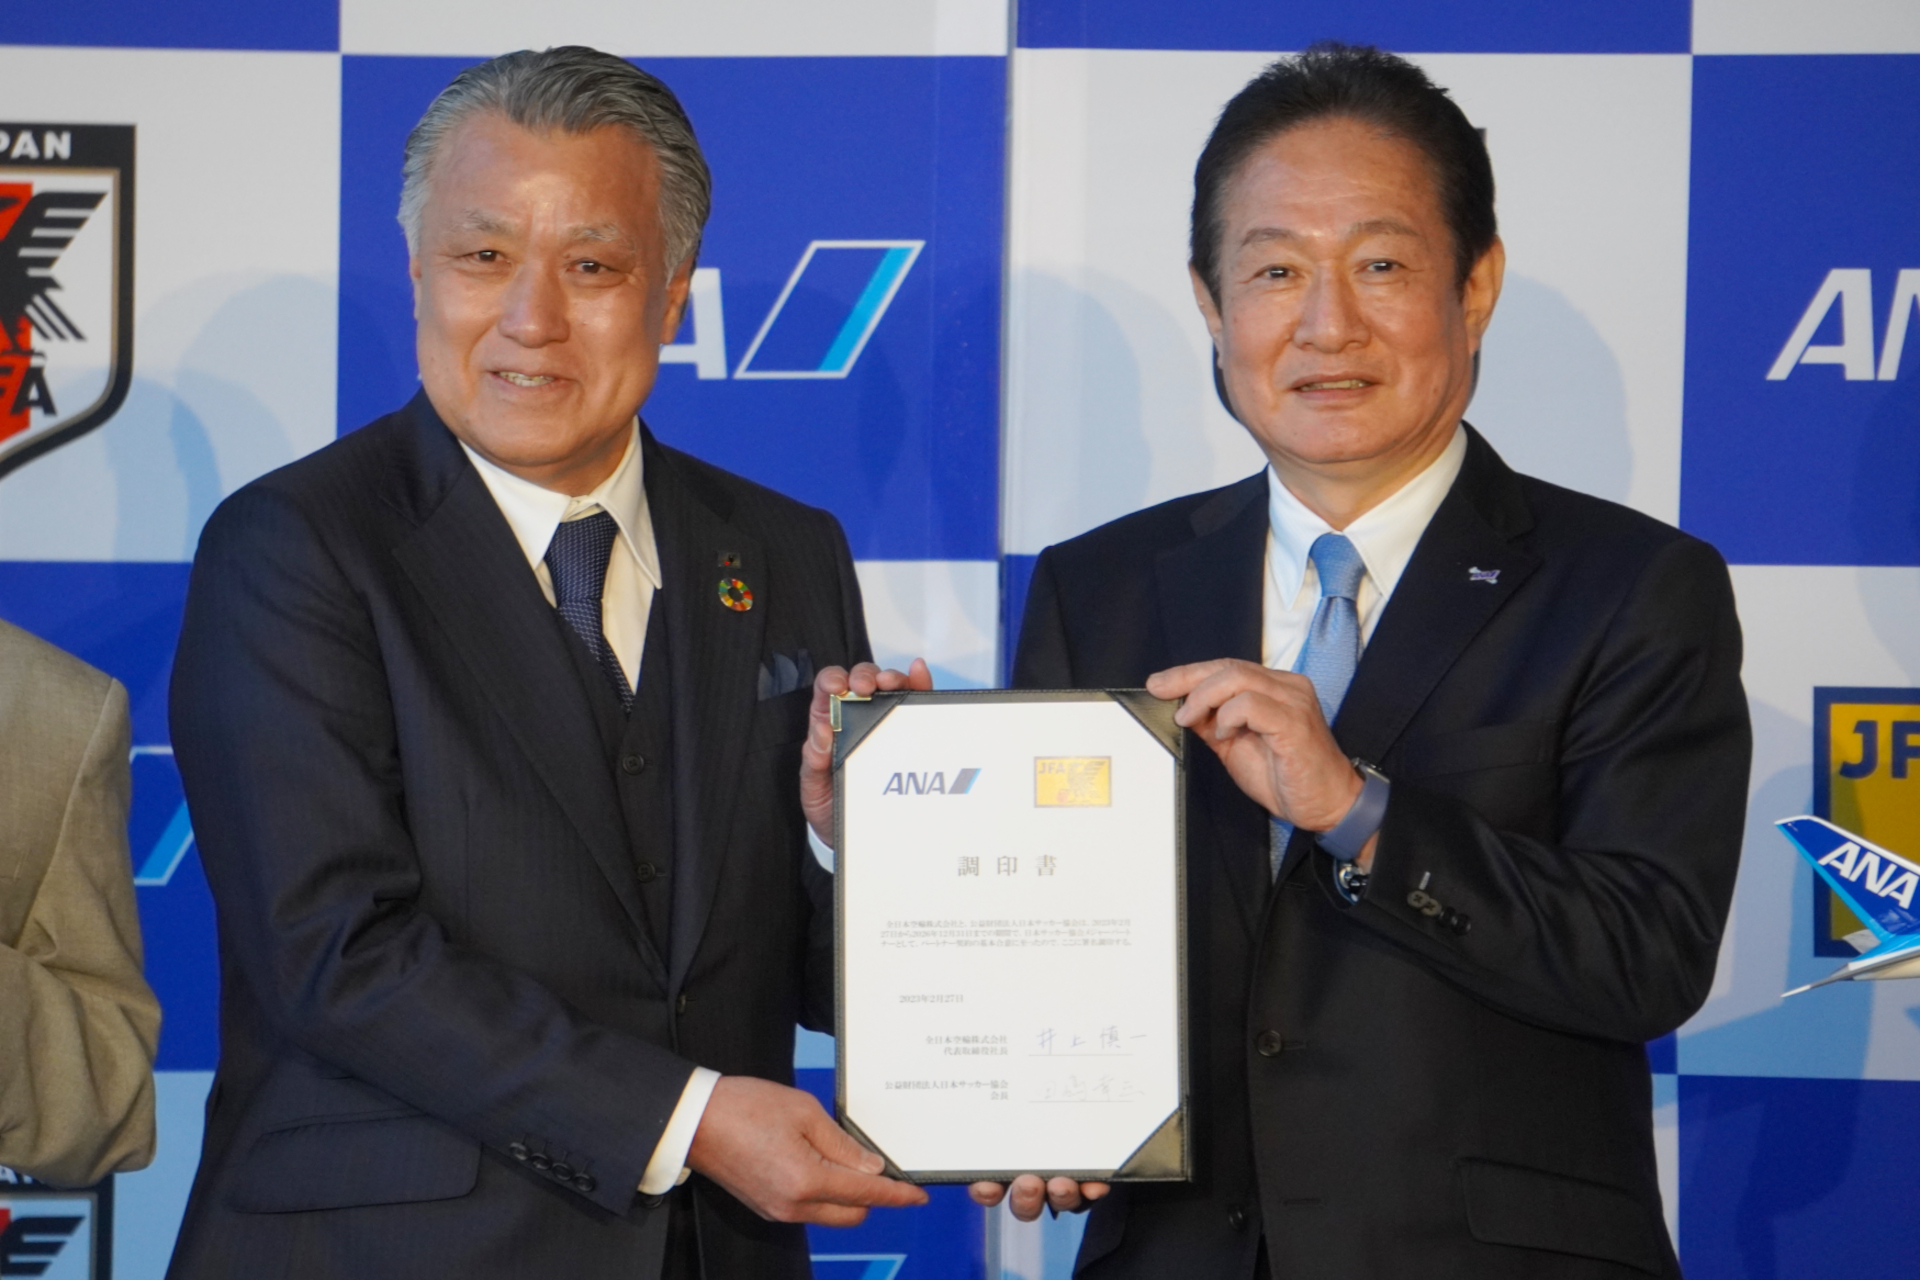 ANAとJFAがメジャーパートナー契約を締結。サッカー日本代表の活動支え